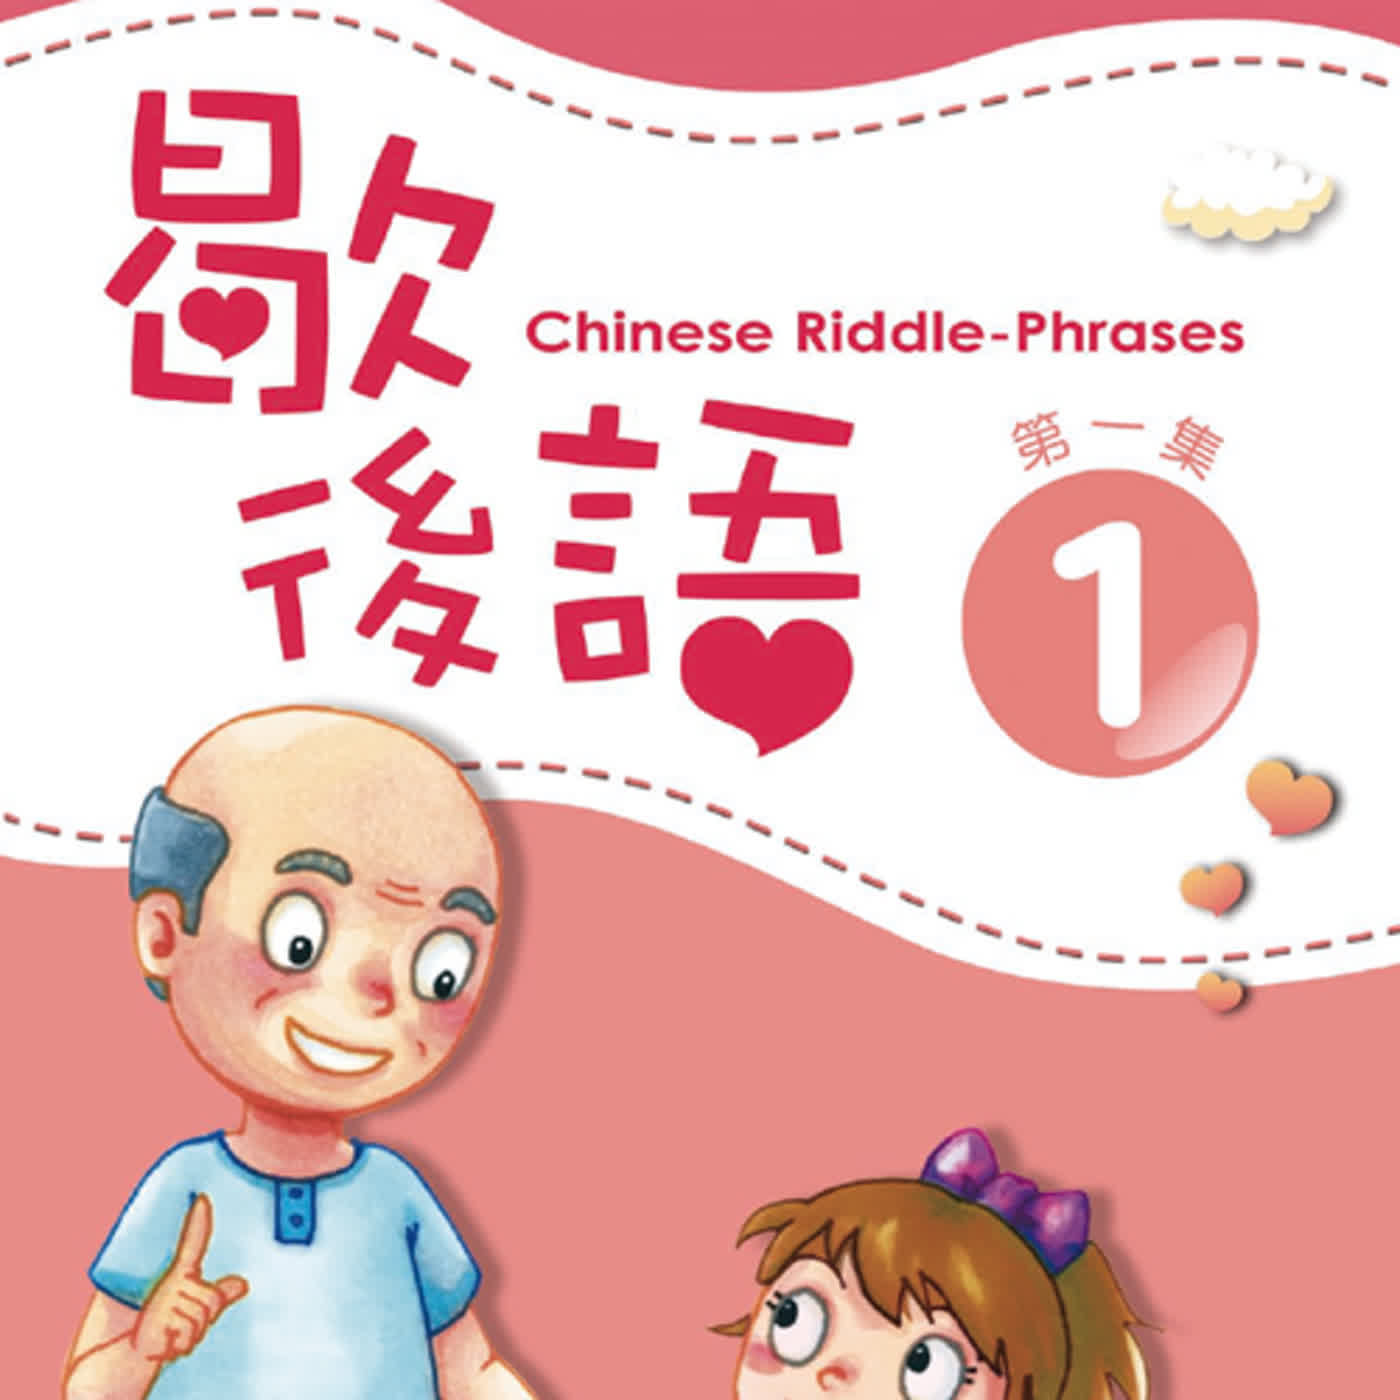 歇後語1 L15  Chinese Riddle-Phrases L15